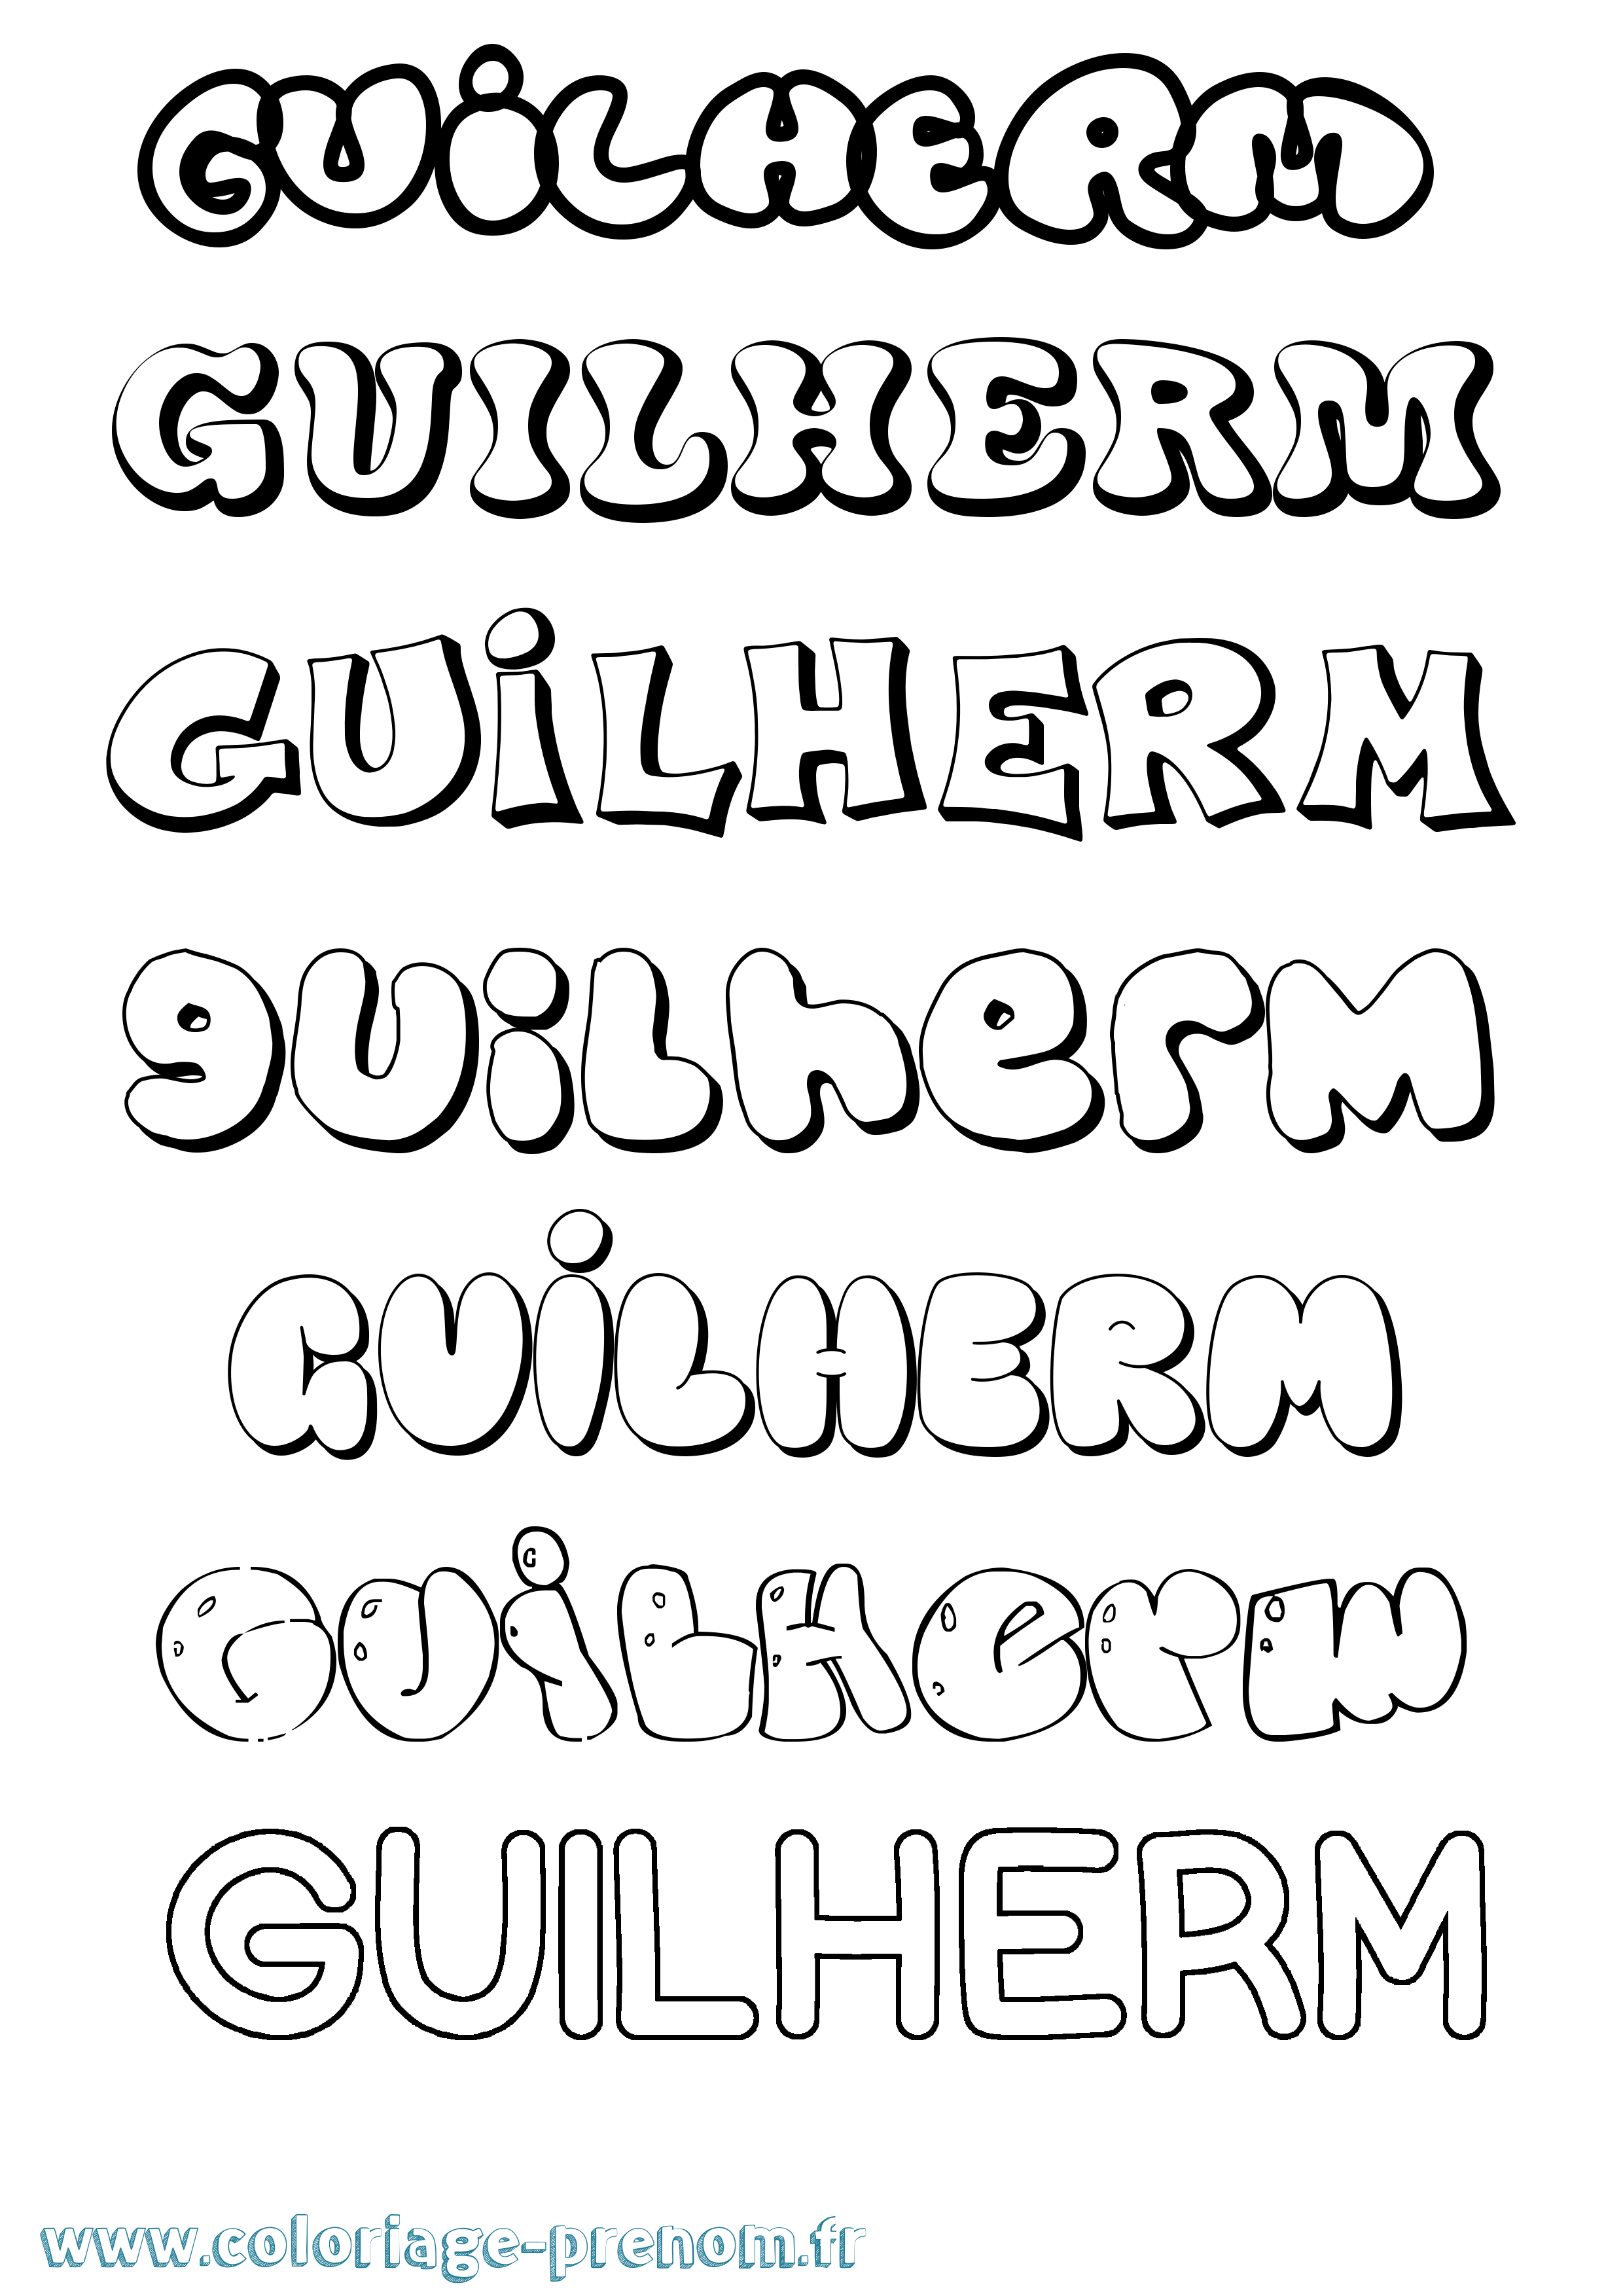 Coloriage prénom Guilherm Bubble